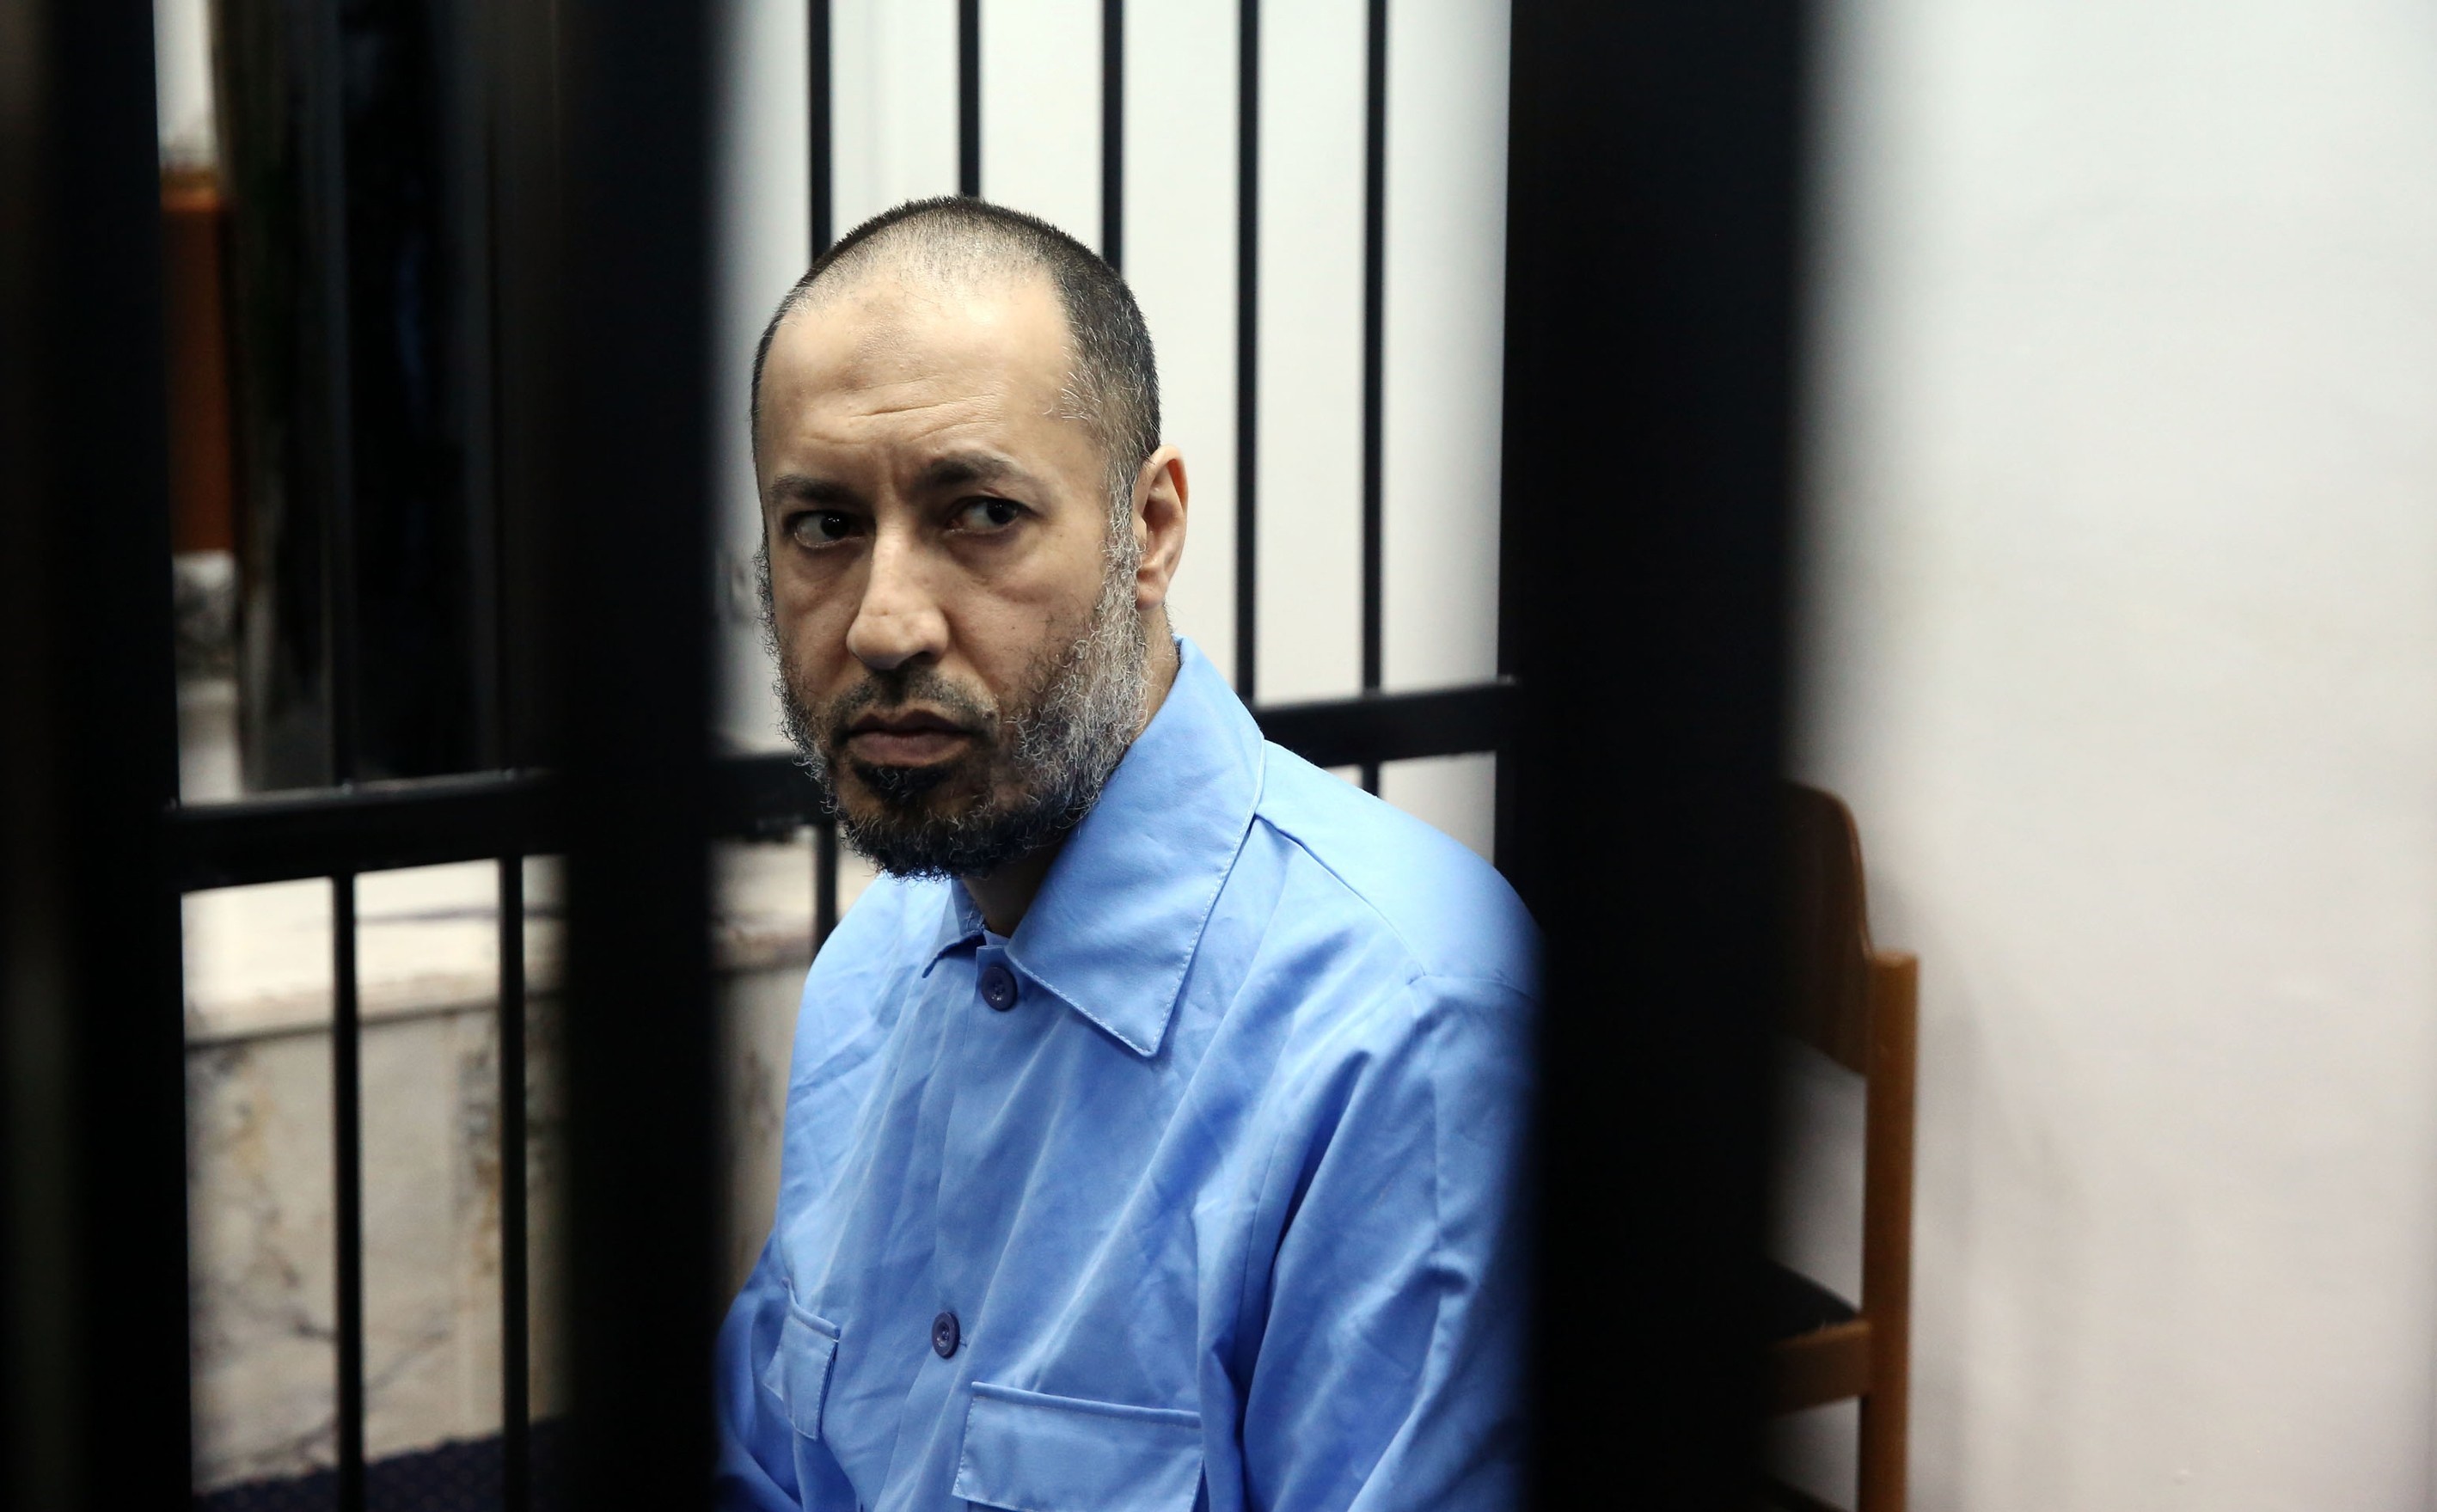 Szabadon engedték Kadhafi háborús bűnökkel gyanúsított fiát Líbiában